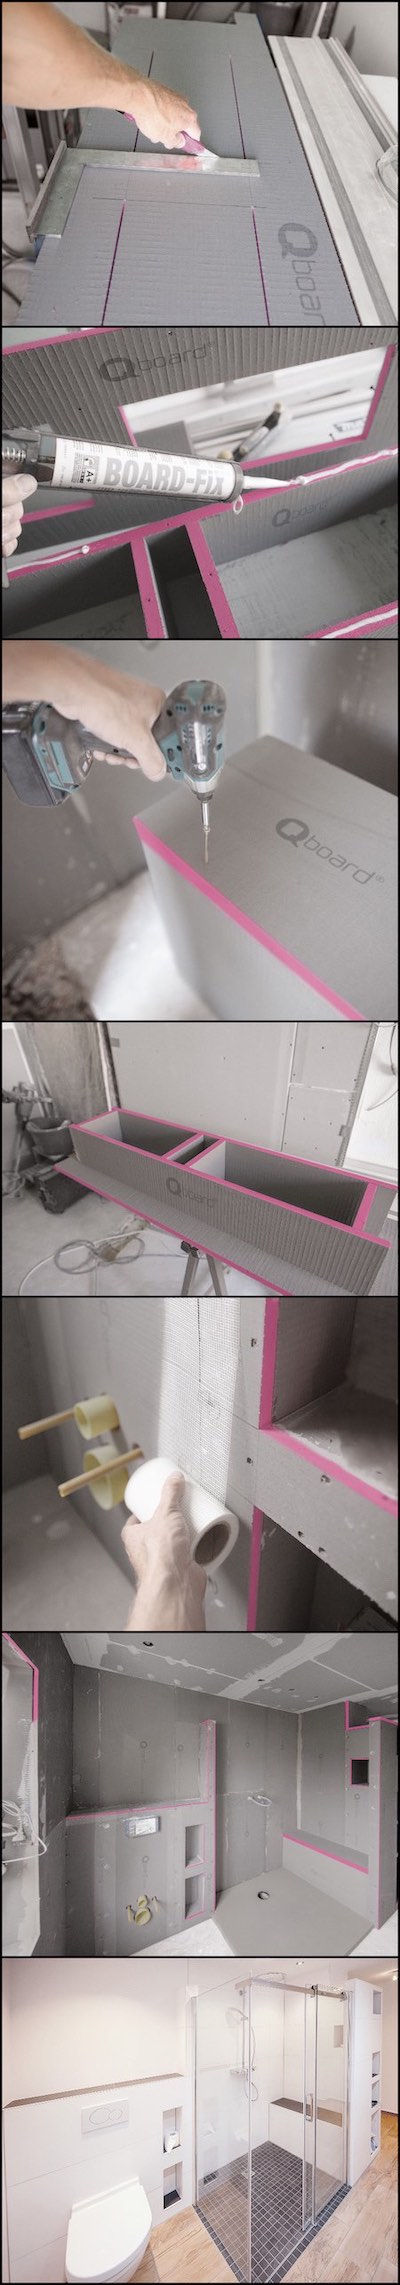 Images de la fabrication de niches dans la salle de bains avec les plaques Qboard